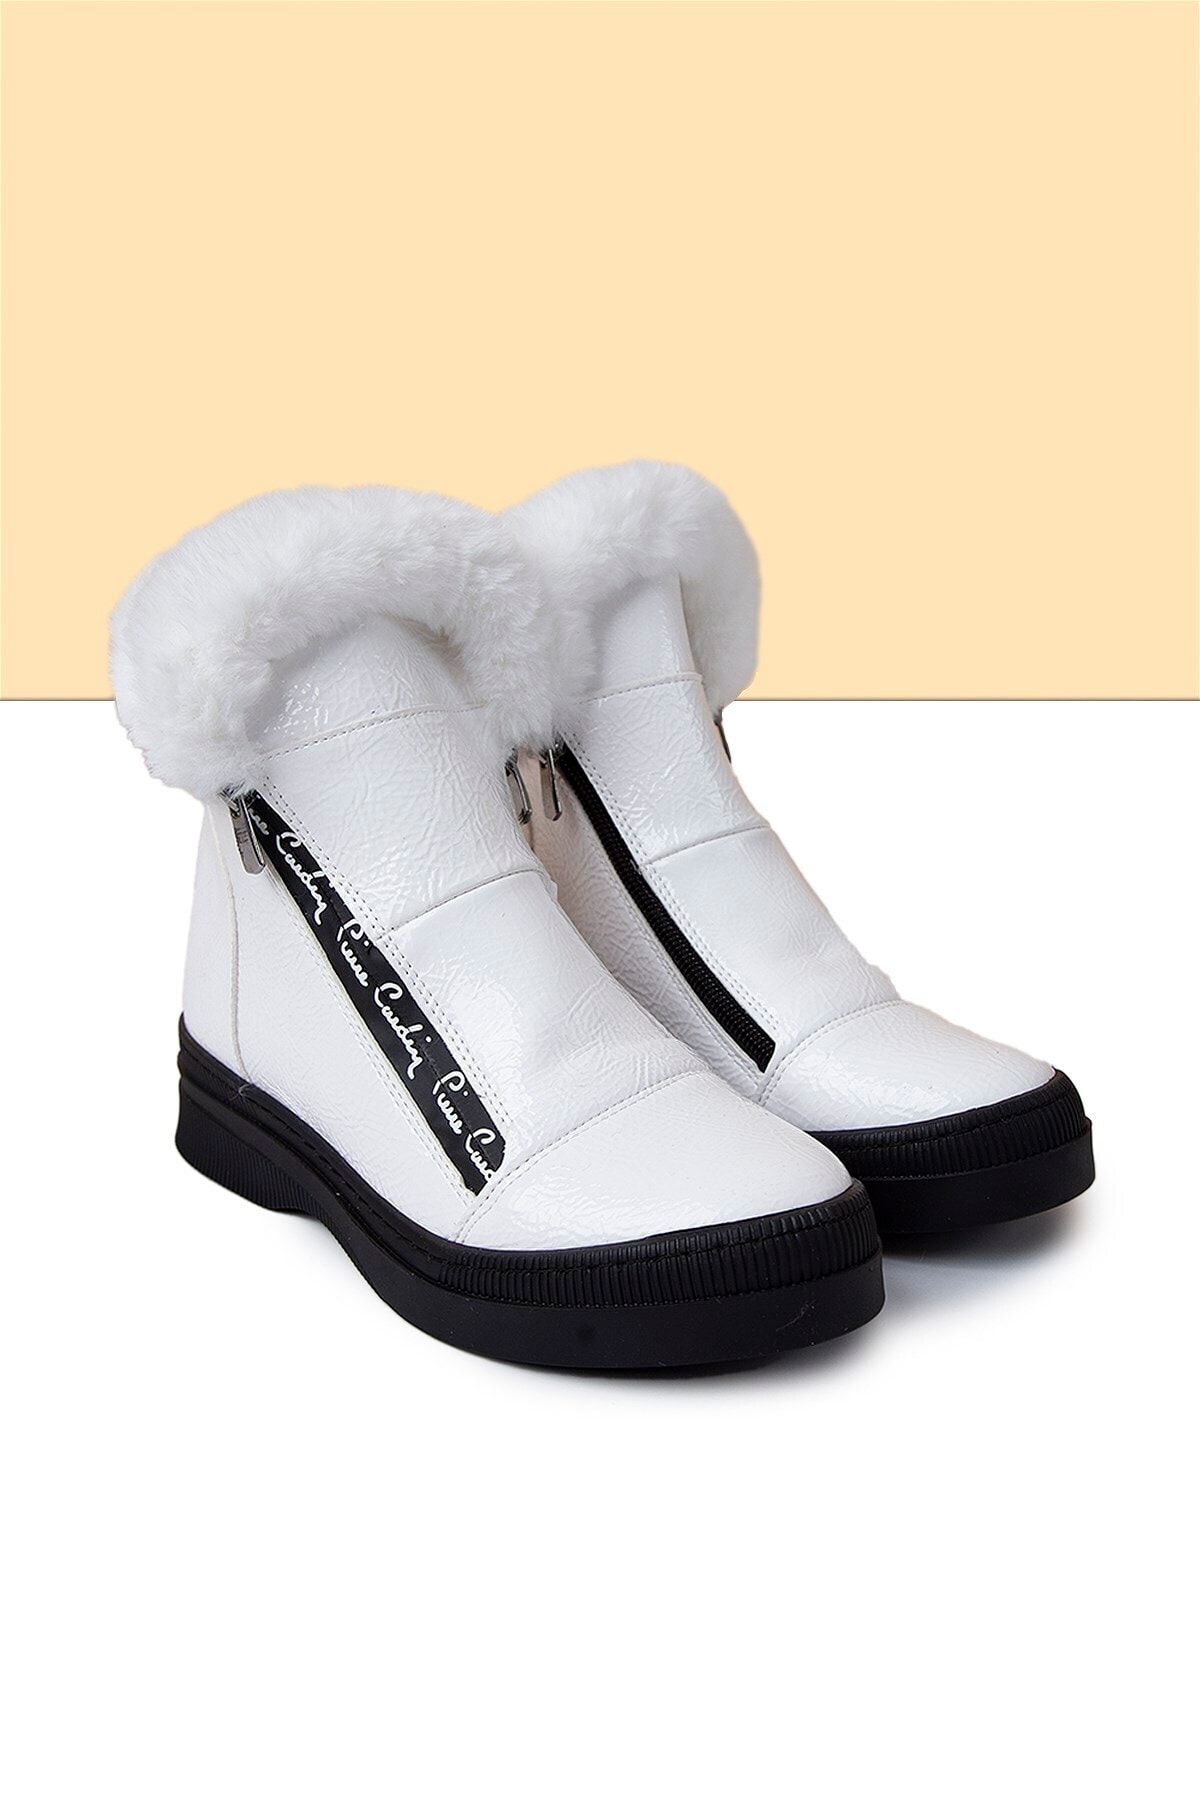 Pierre Cardin PC-50710 Rugan Beyaz Kadın Ayakkabı